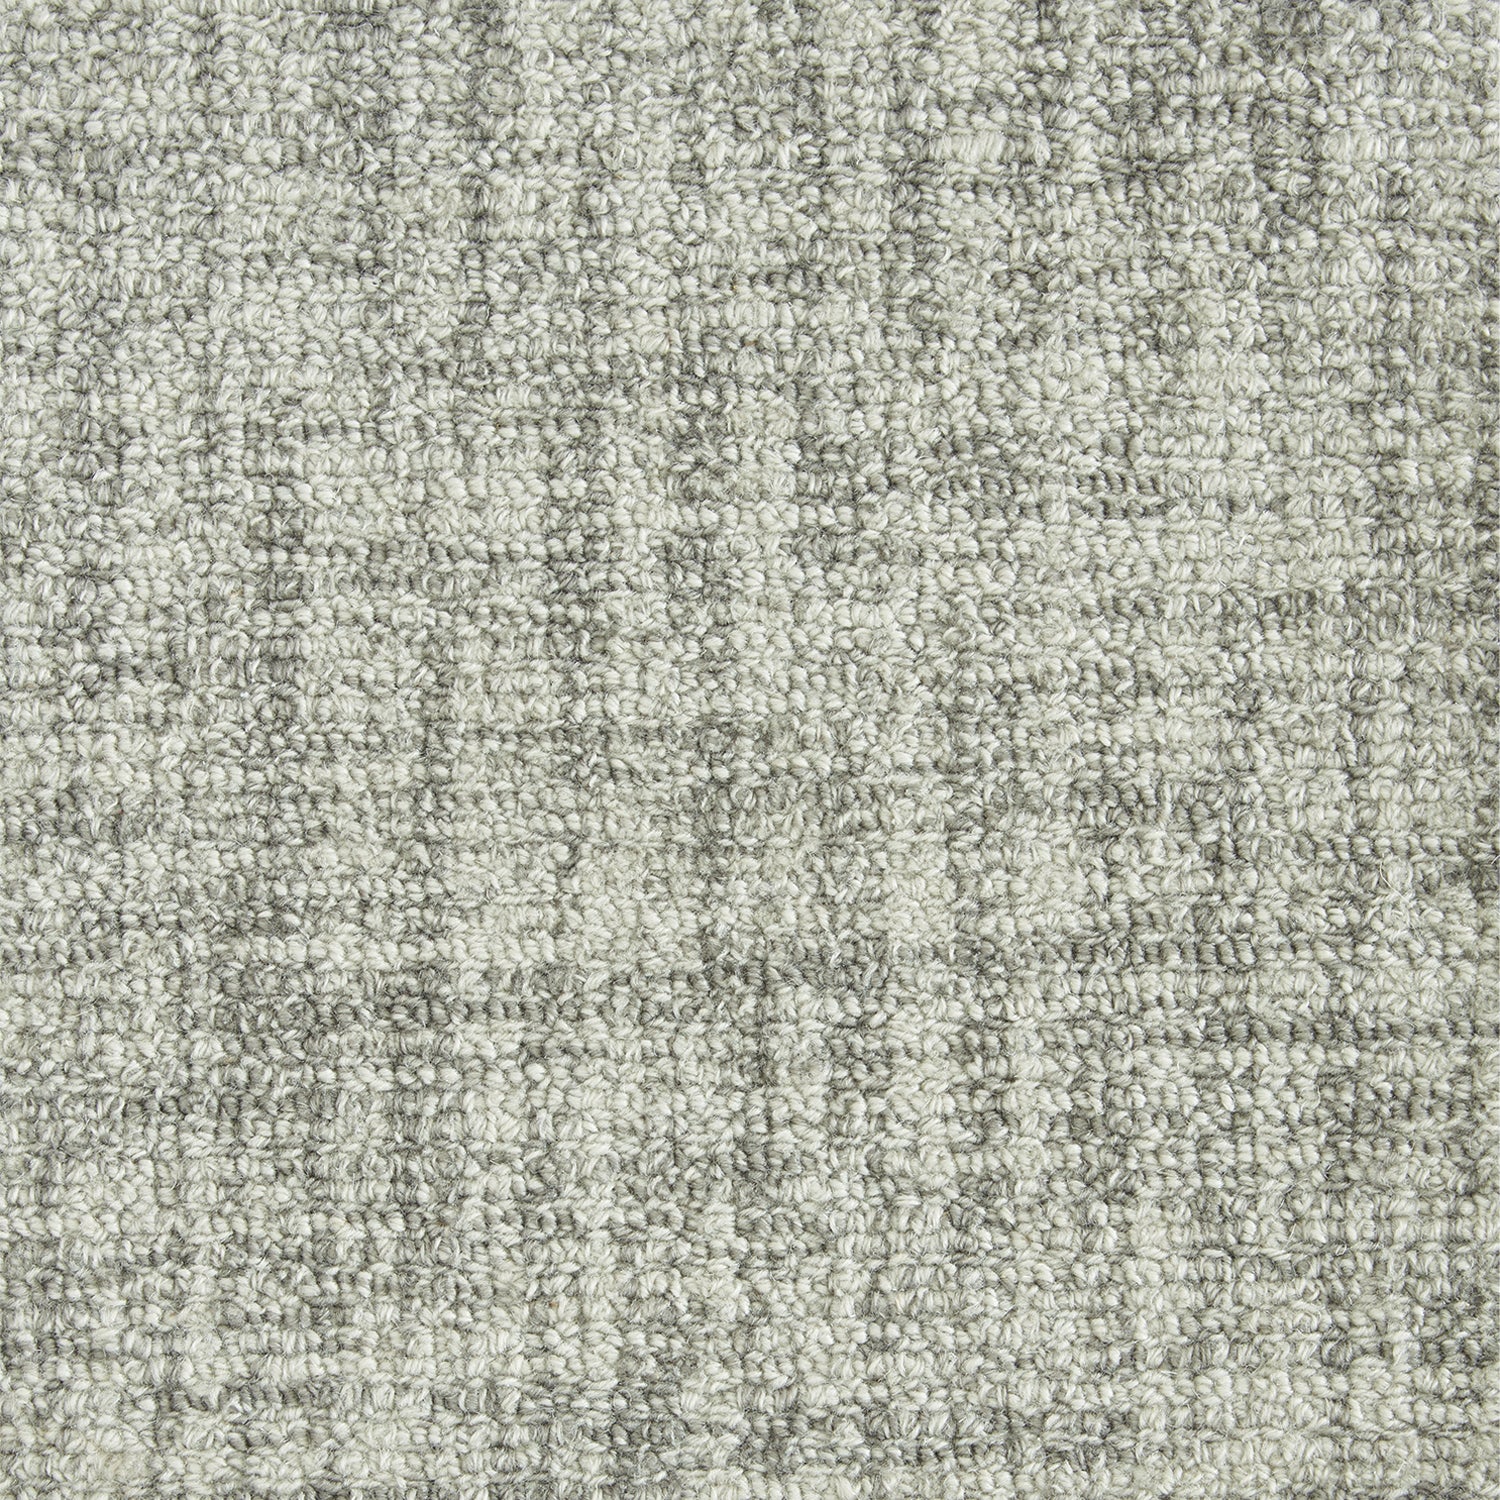 Wool broadloom carpet swatch in a chunky looped weave in mottled silver.